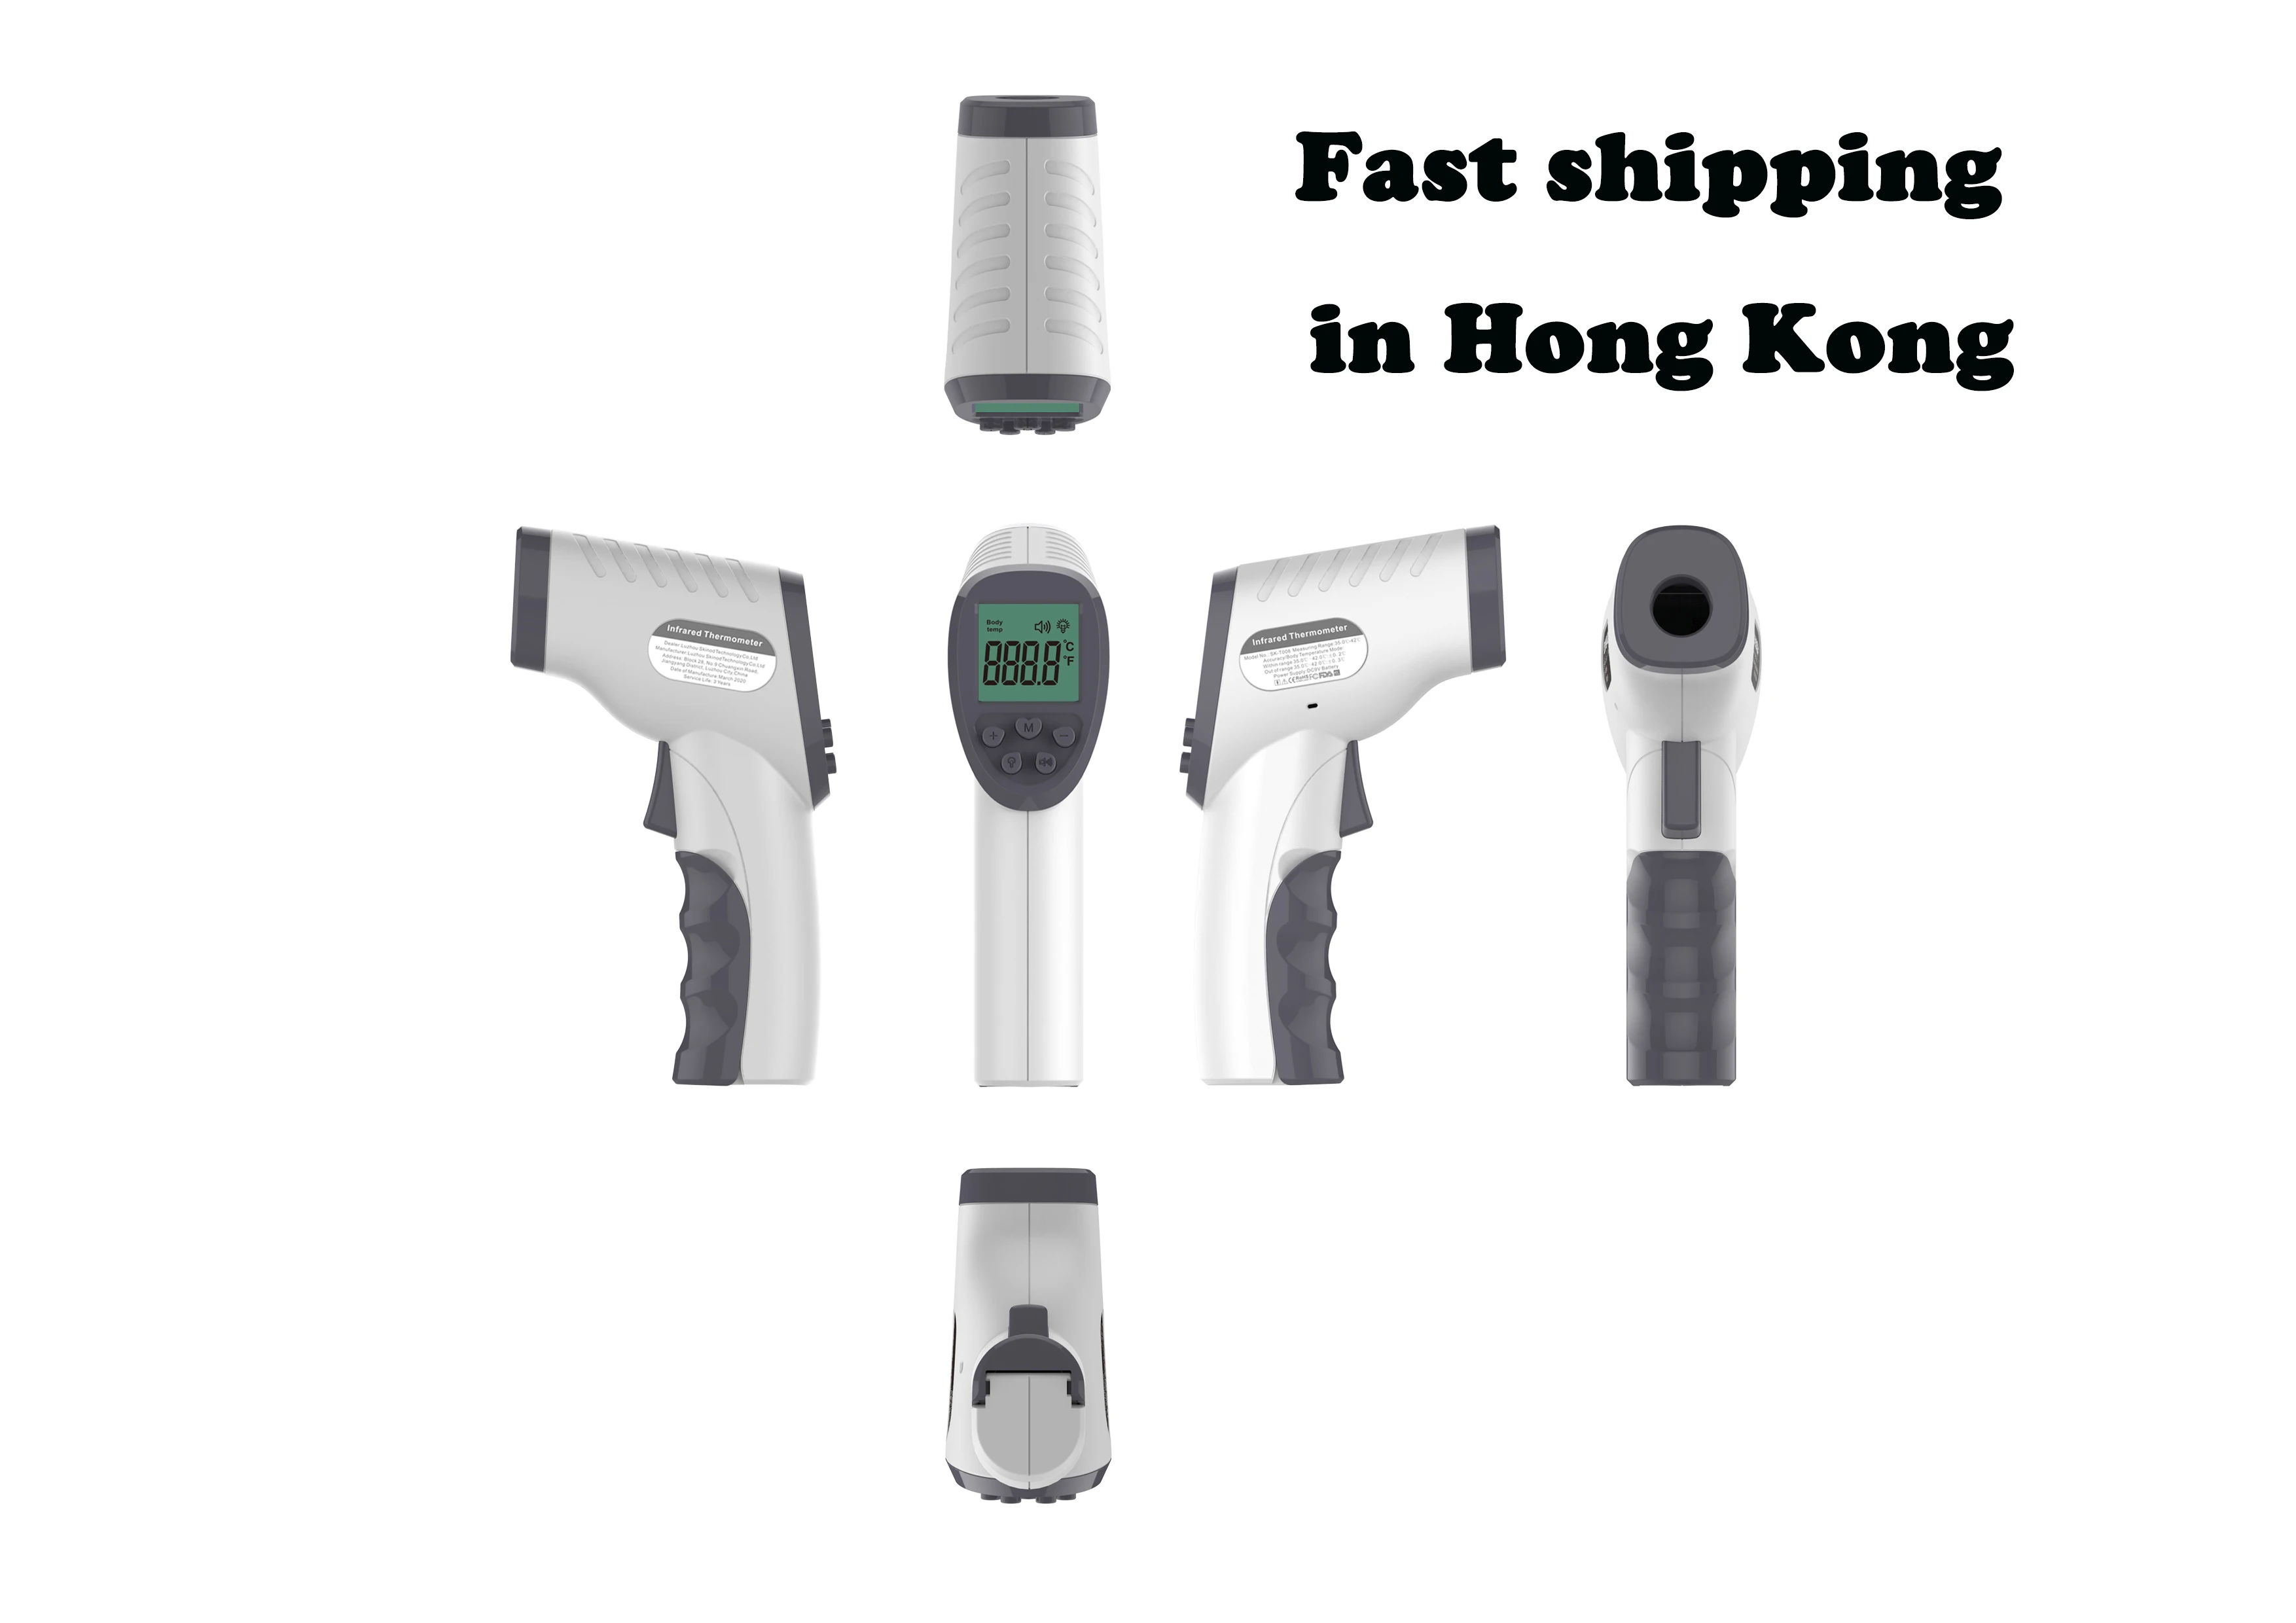 Поддержка Гонконга, доставка со склада, Бесконтактный инфракрасный термометр, термометр для лба